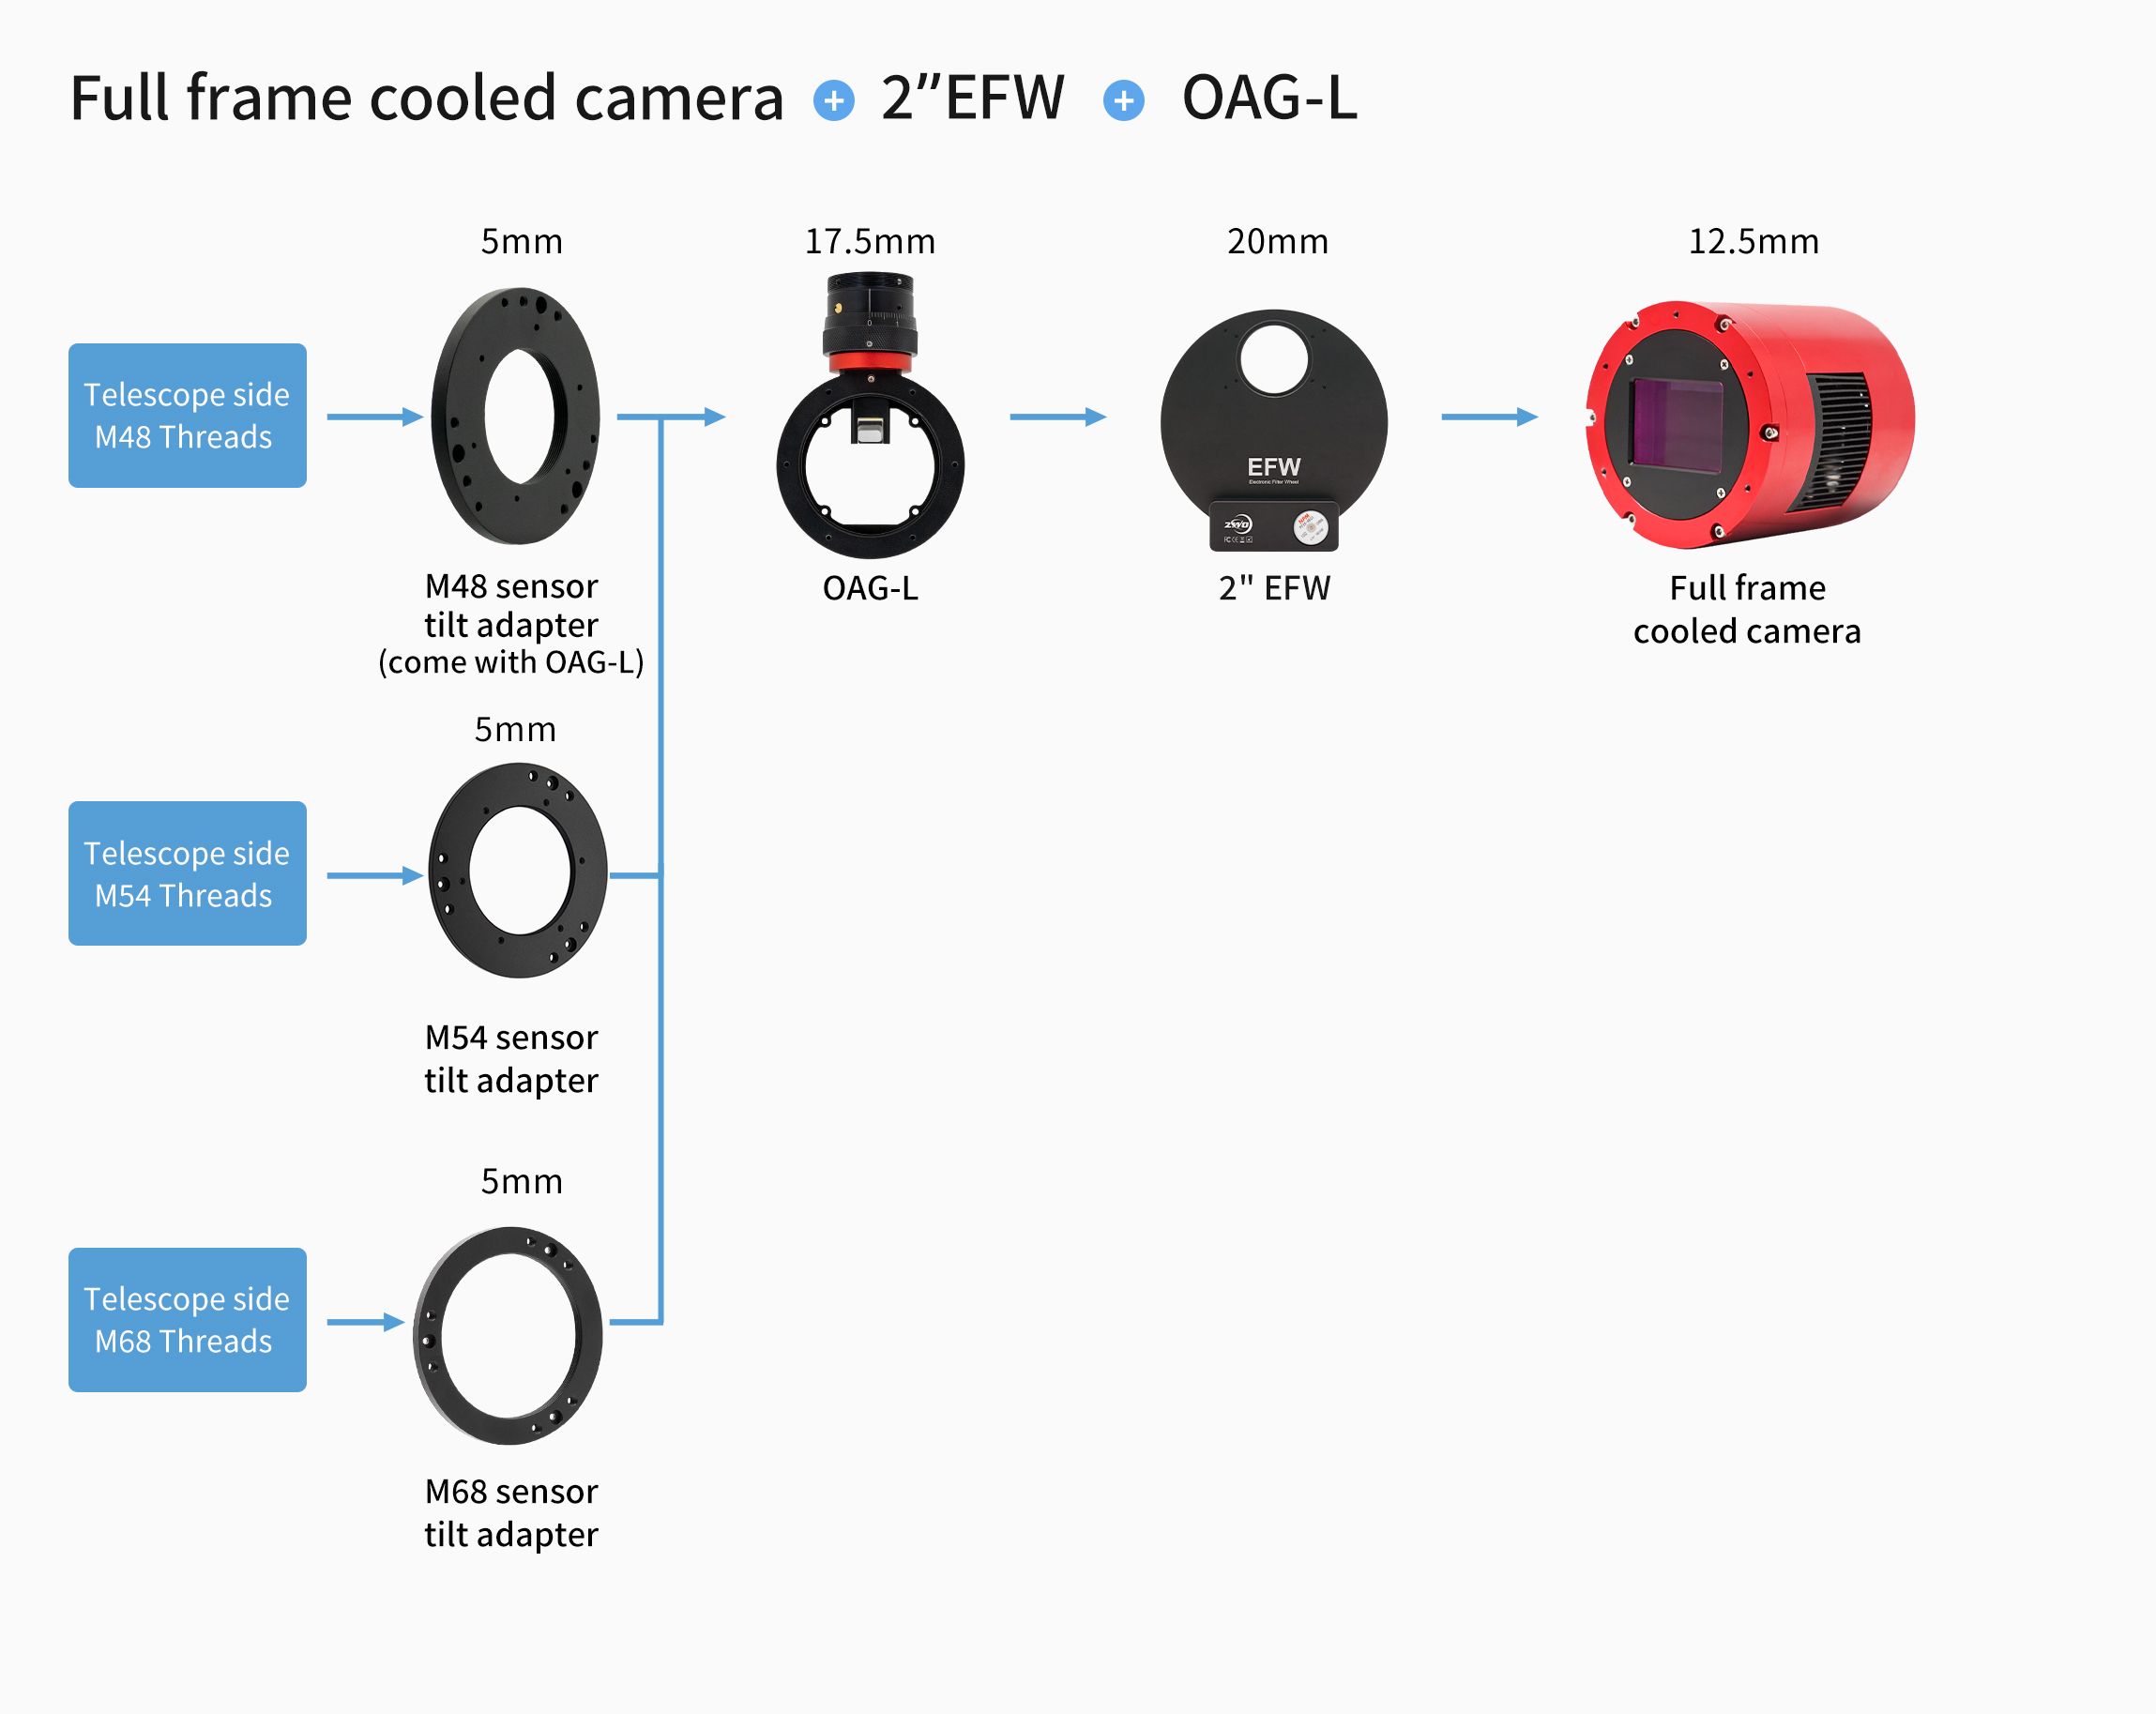  ZWO OAG M68 Guida Fuori Asse gigante - adatto per telecamera mono Full Frame Cooled-ASI6200MM Pro 